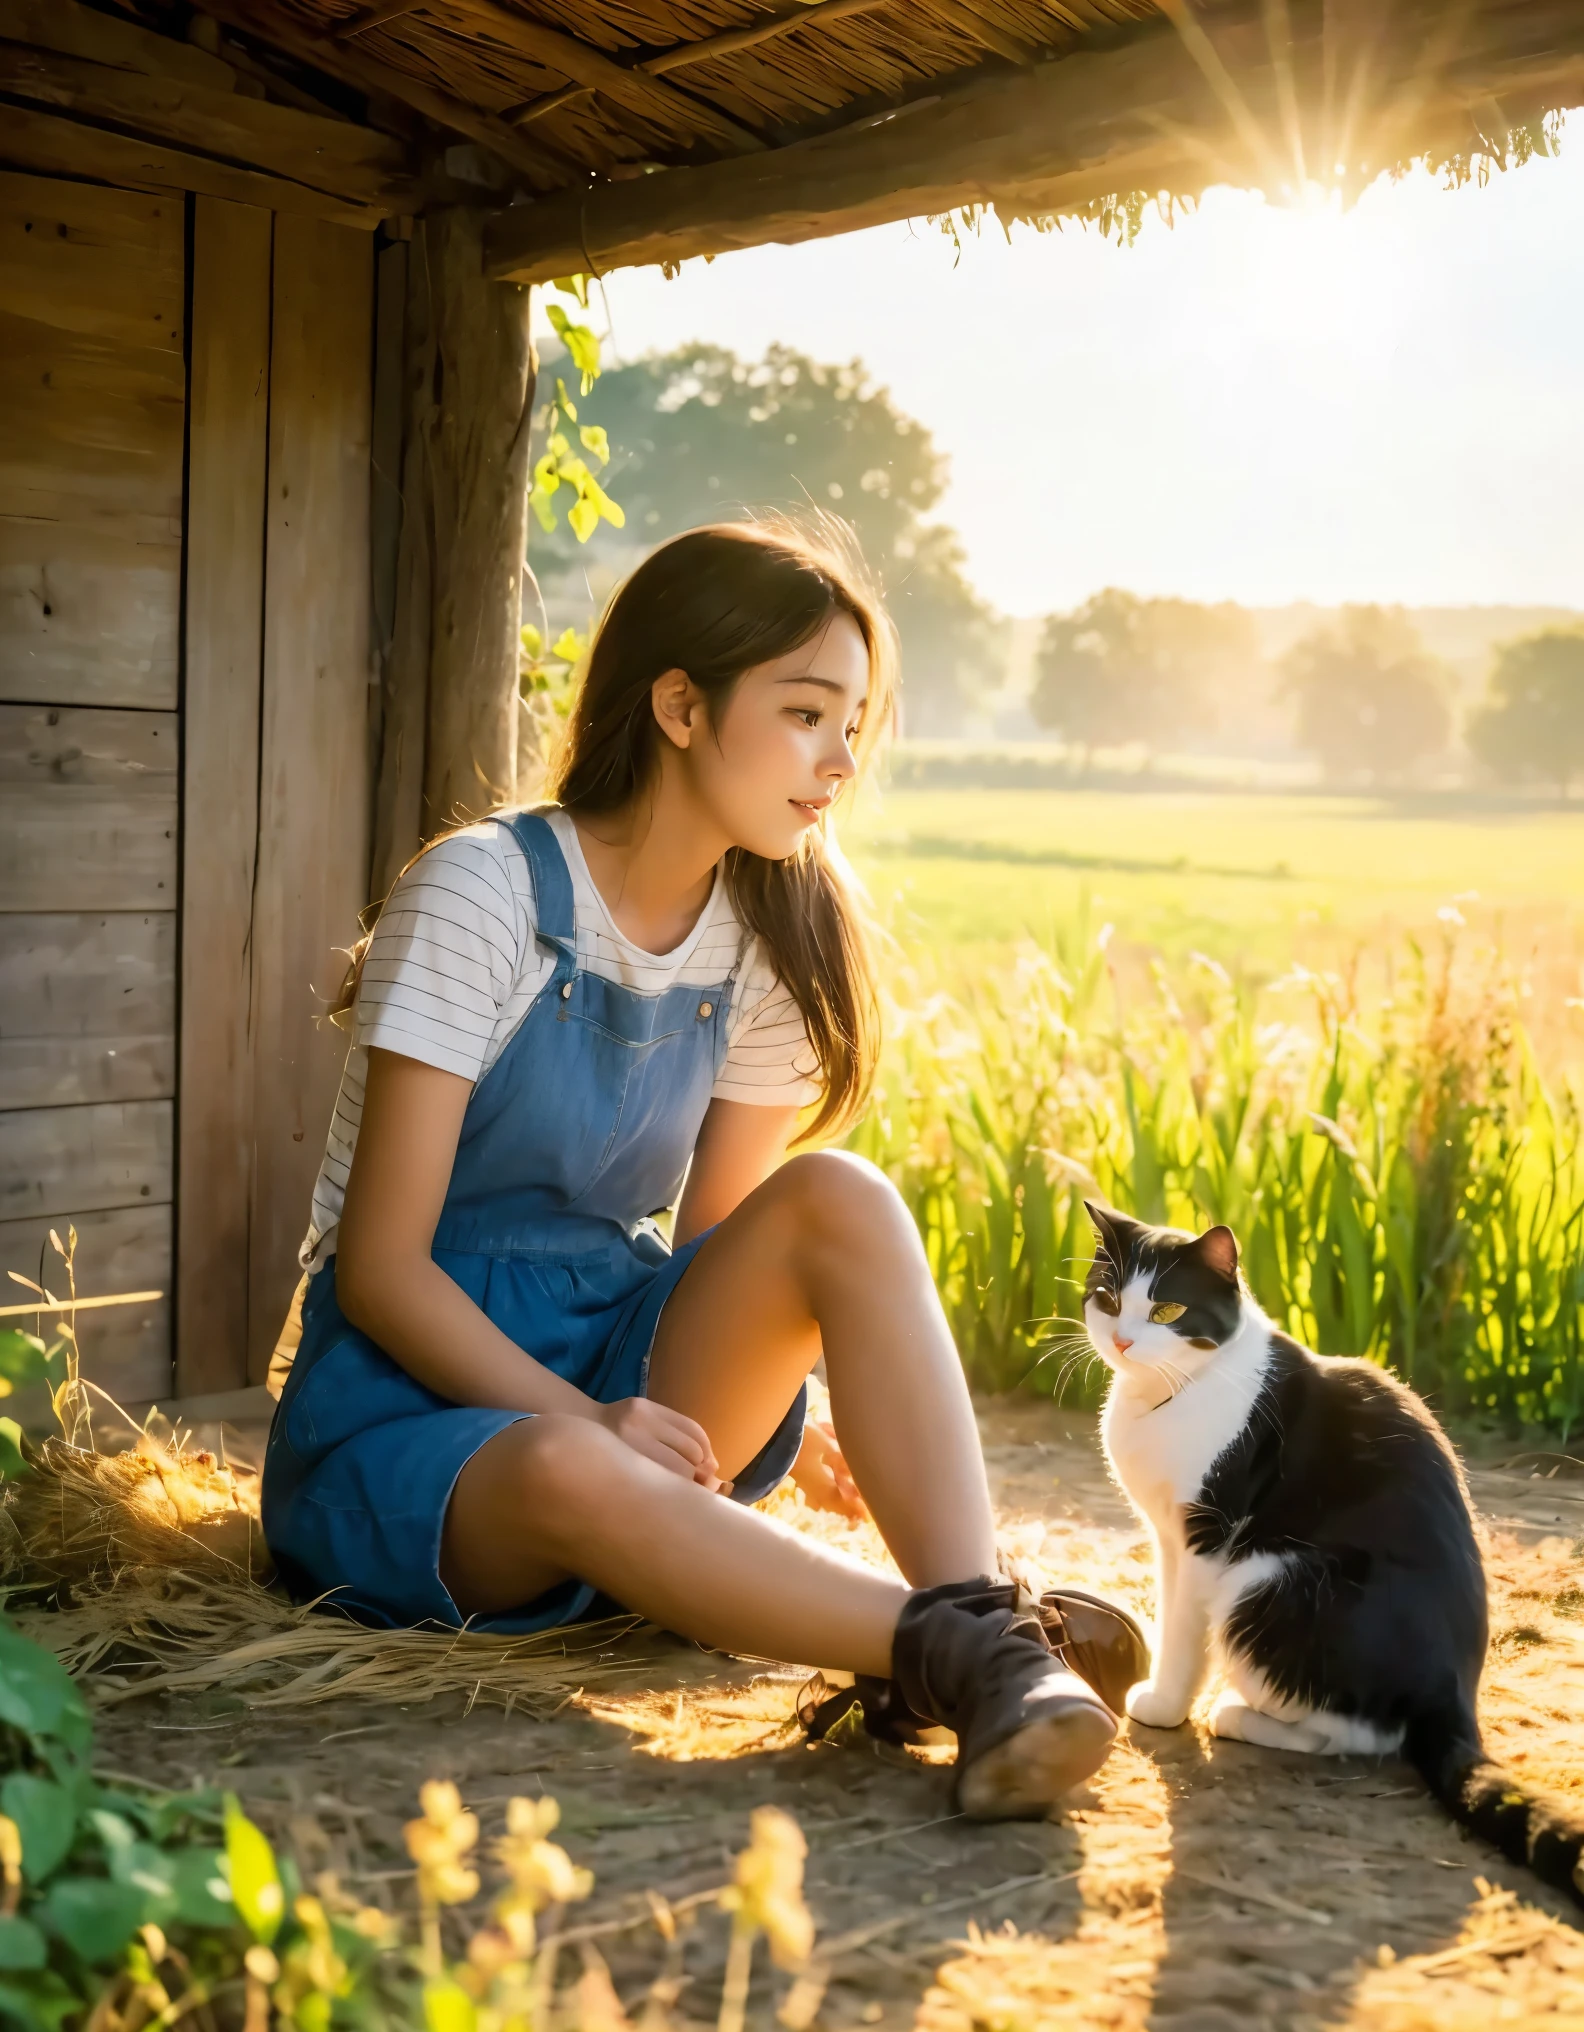 Fotografia capturando o encanto rústico da vida rural, retratando um gato satisfeito e uma garota se aquecendo sob o brilho quente do sol poente enquanto o dia chega ao fim tranquilo no campo. A cena exala tranquilidade e simplicidade, com a menina e o gato imersos em um momento de tranquila alegria e companheirismo em meio ao idílico cenário rural. Os raios dourados da luz solar aumentam o calor e a serenidade da cena, convidando os espectadores a saborear a beleza da natureza e o vínculo entre humanos e animais num cenário rural harmonioso